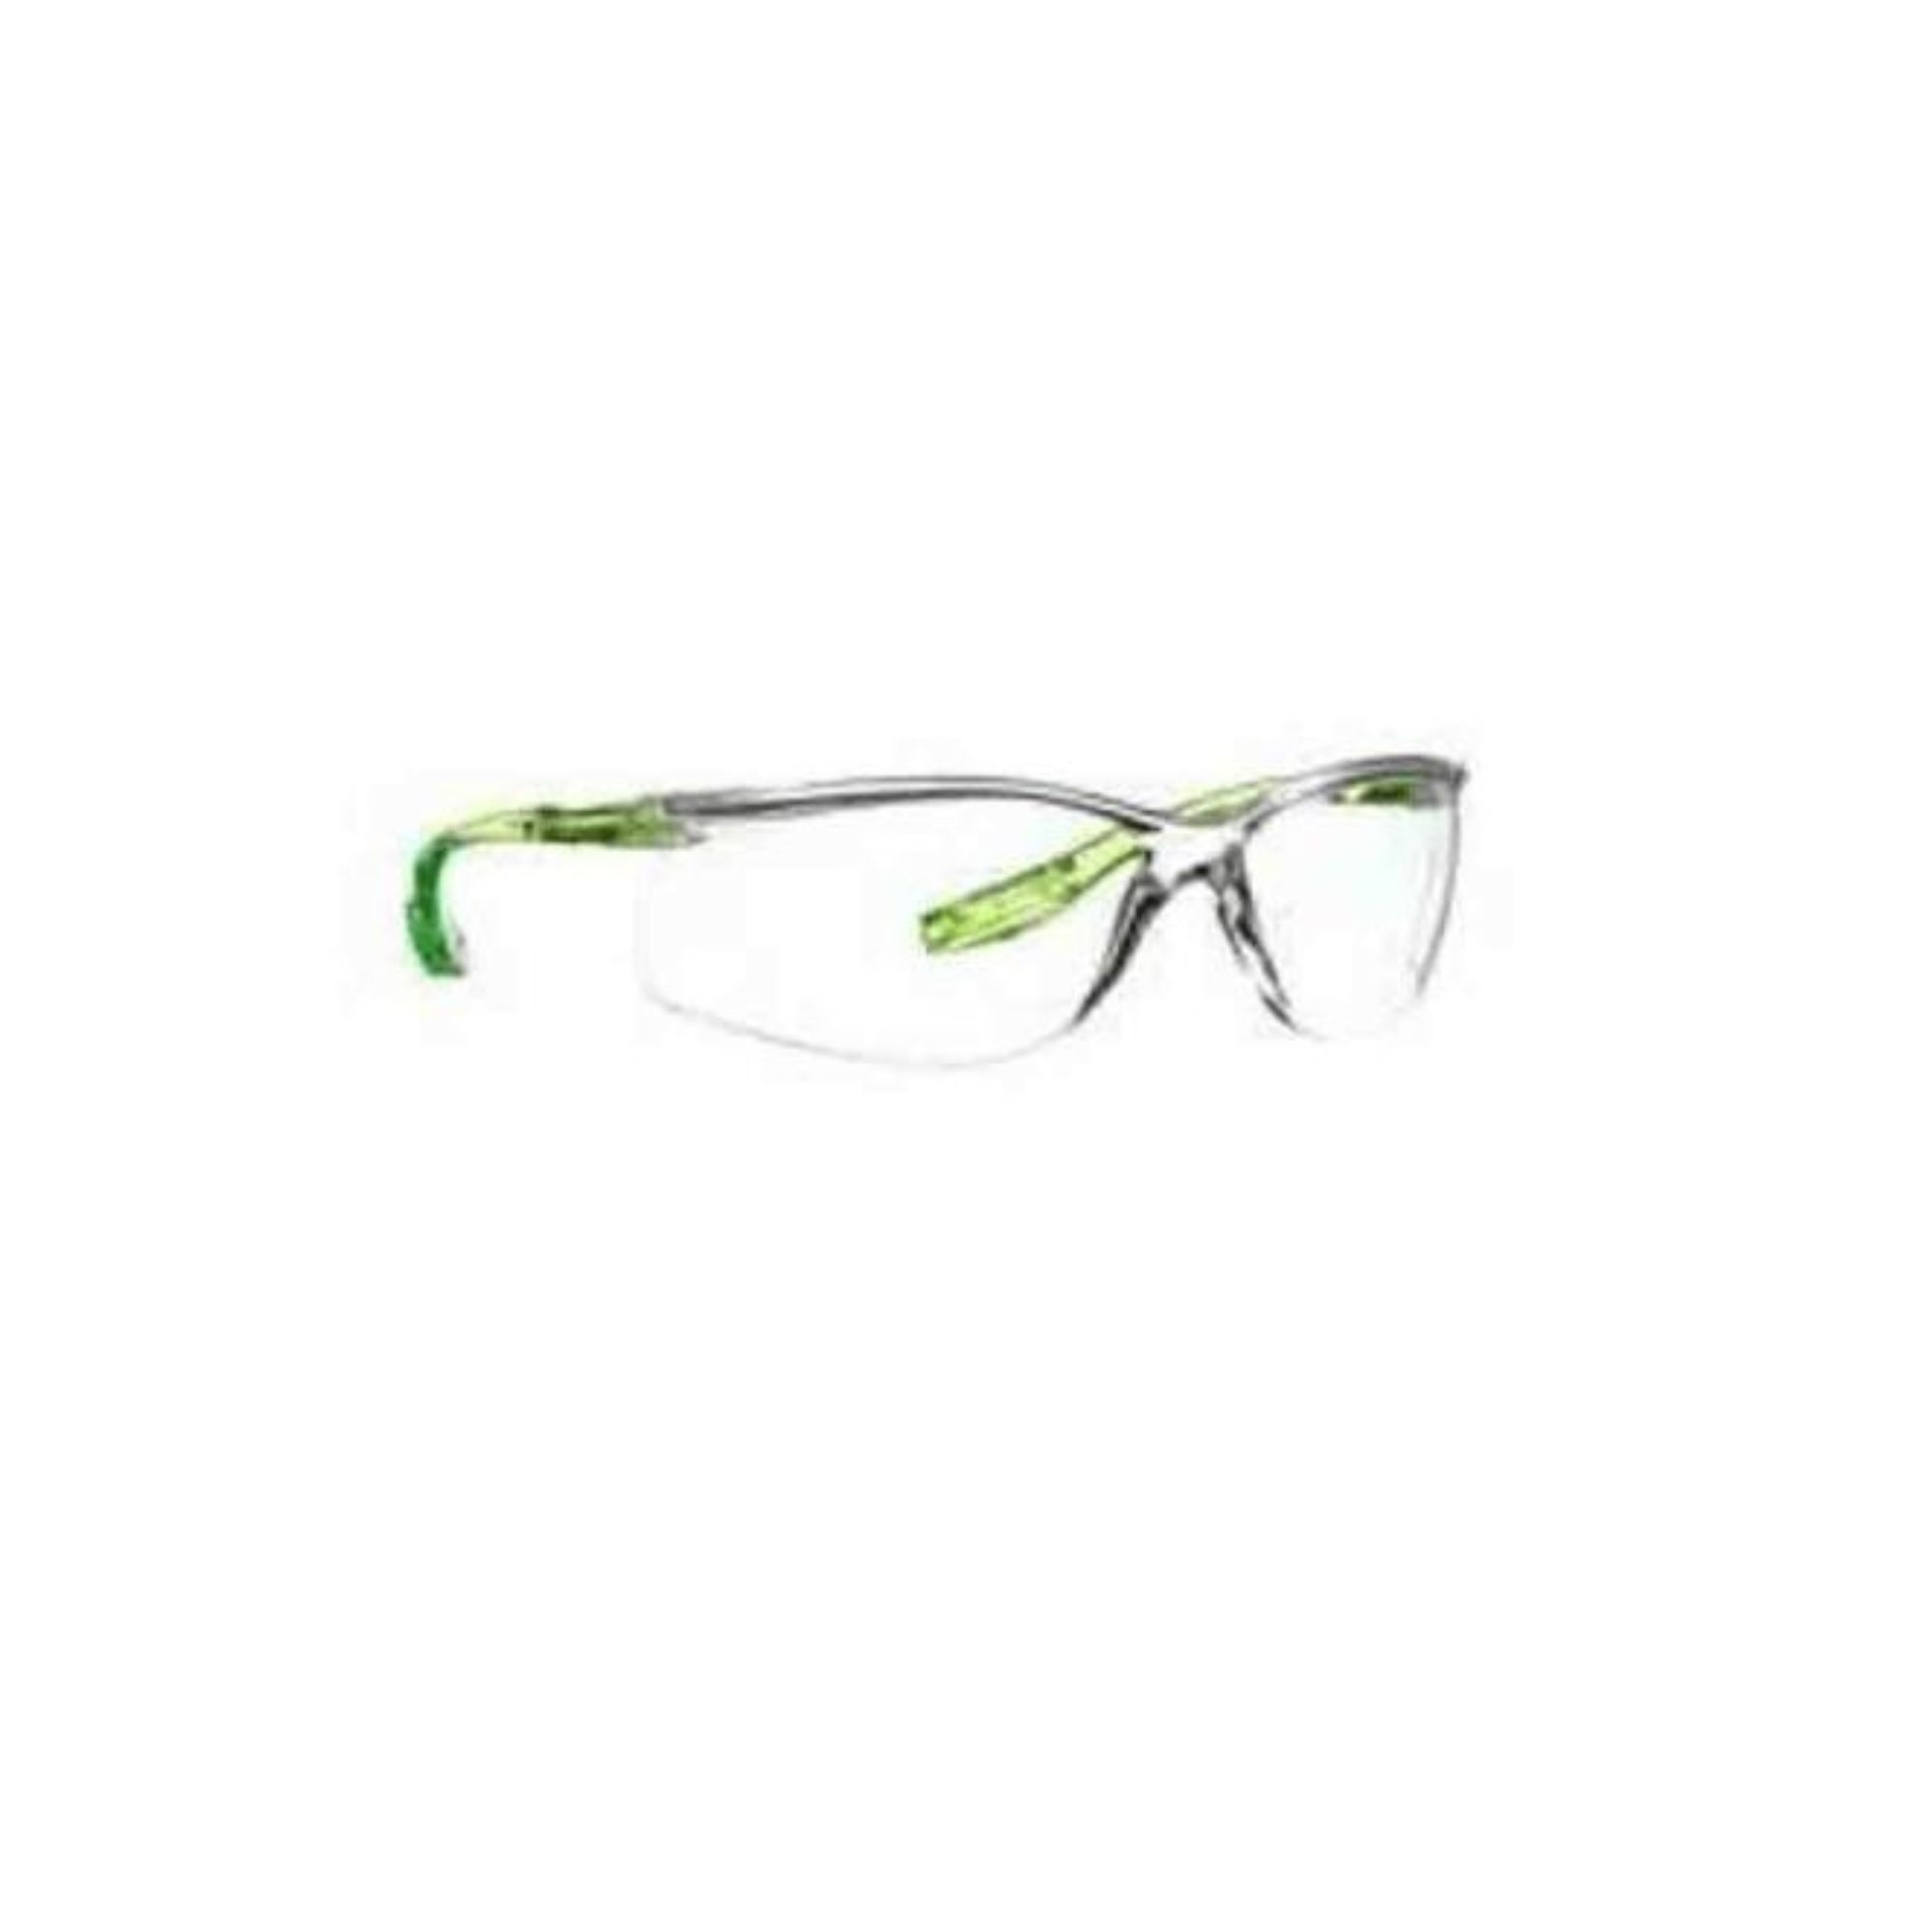 Oculos de segurança hastes verdes anti-riscos Solus 3M